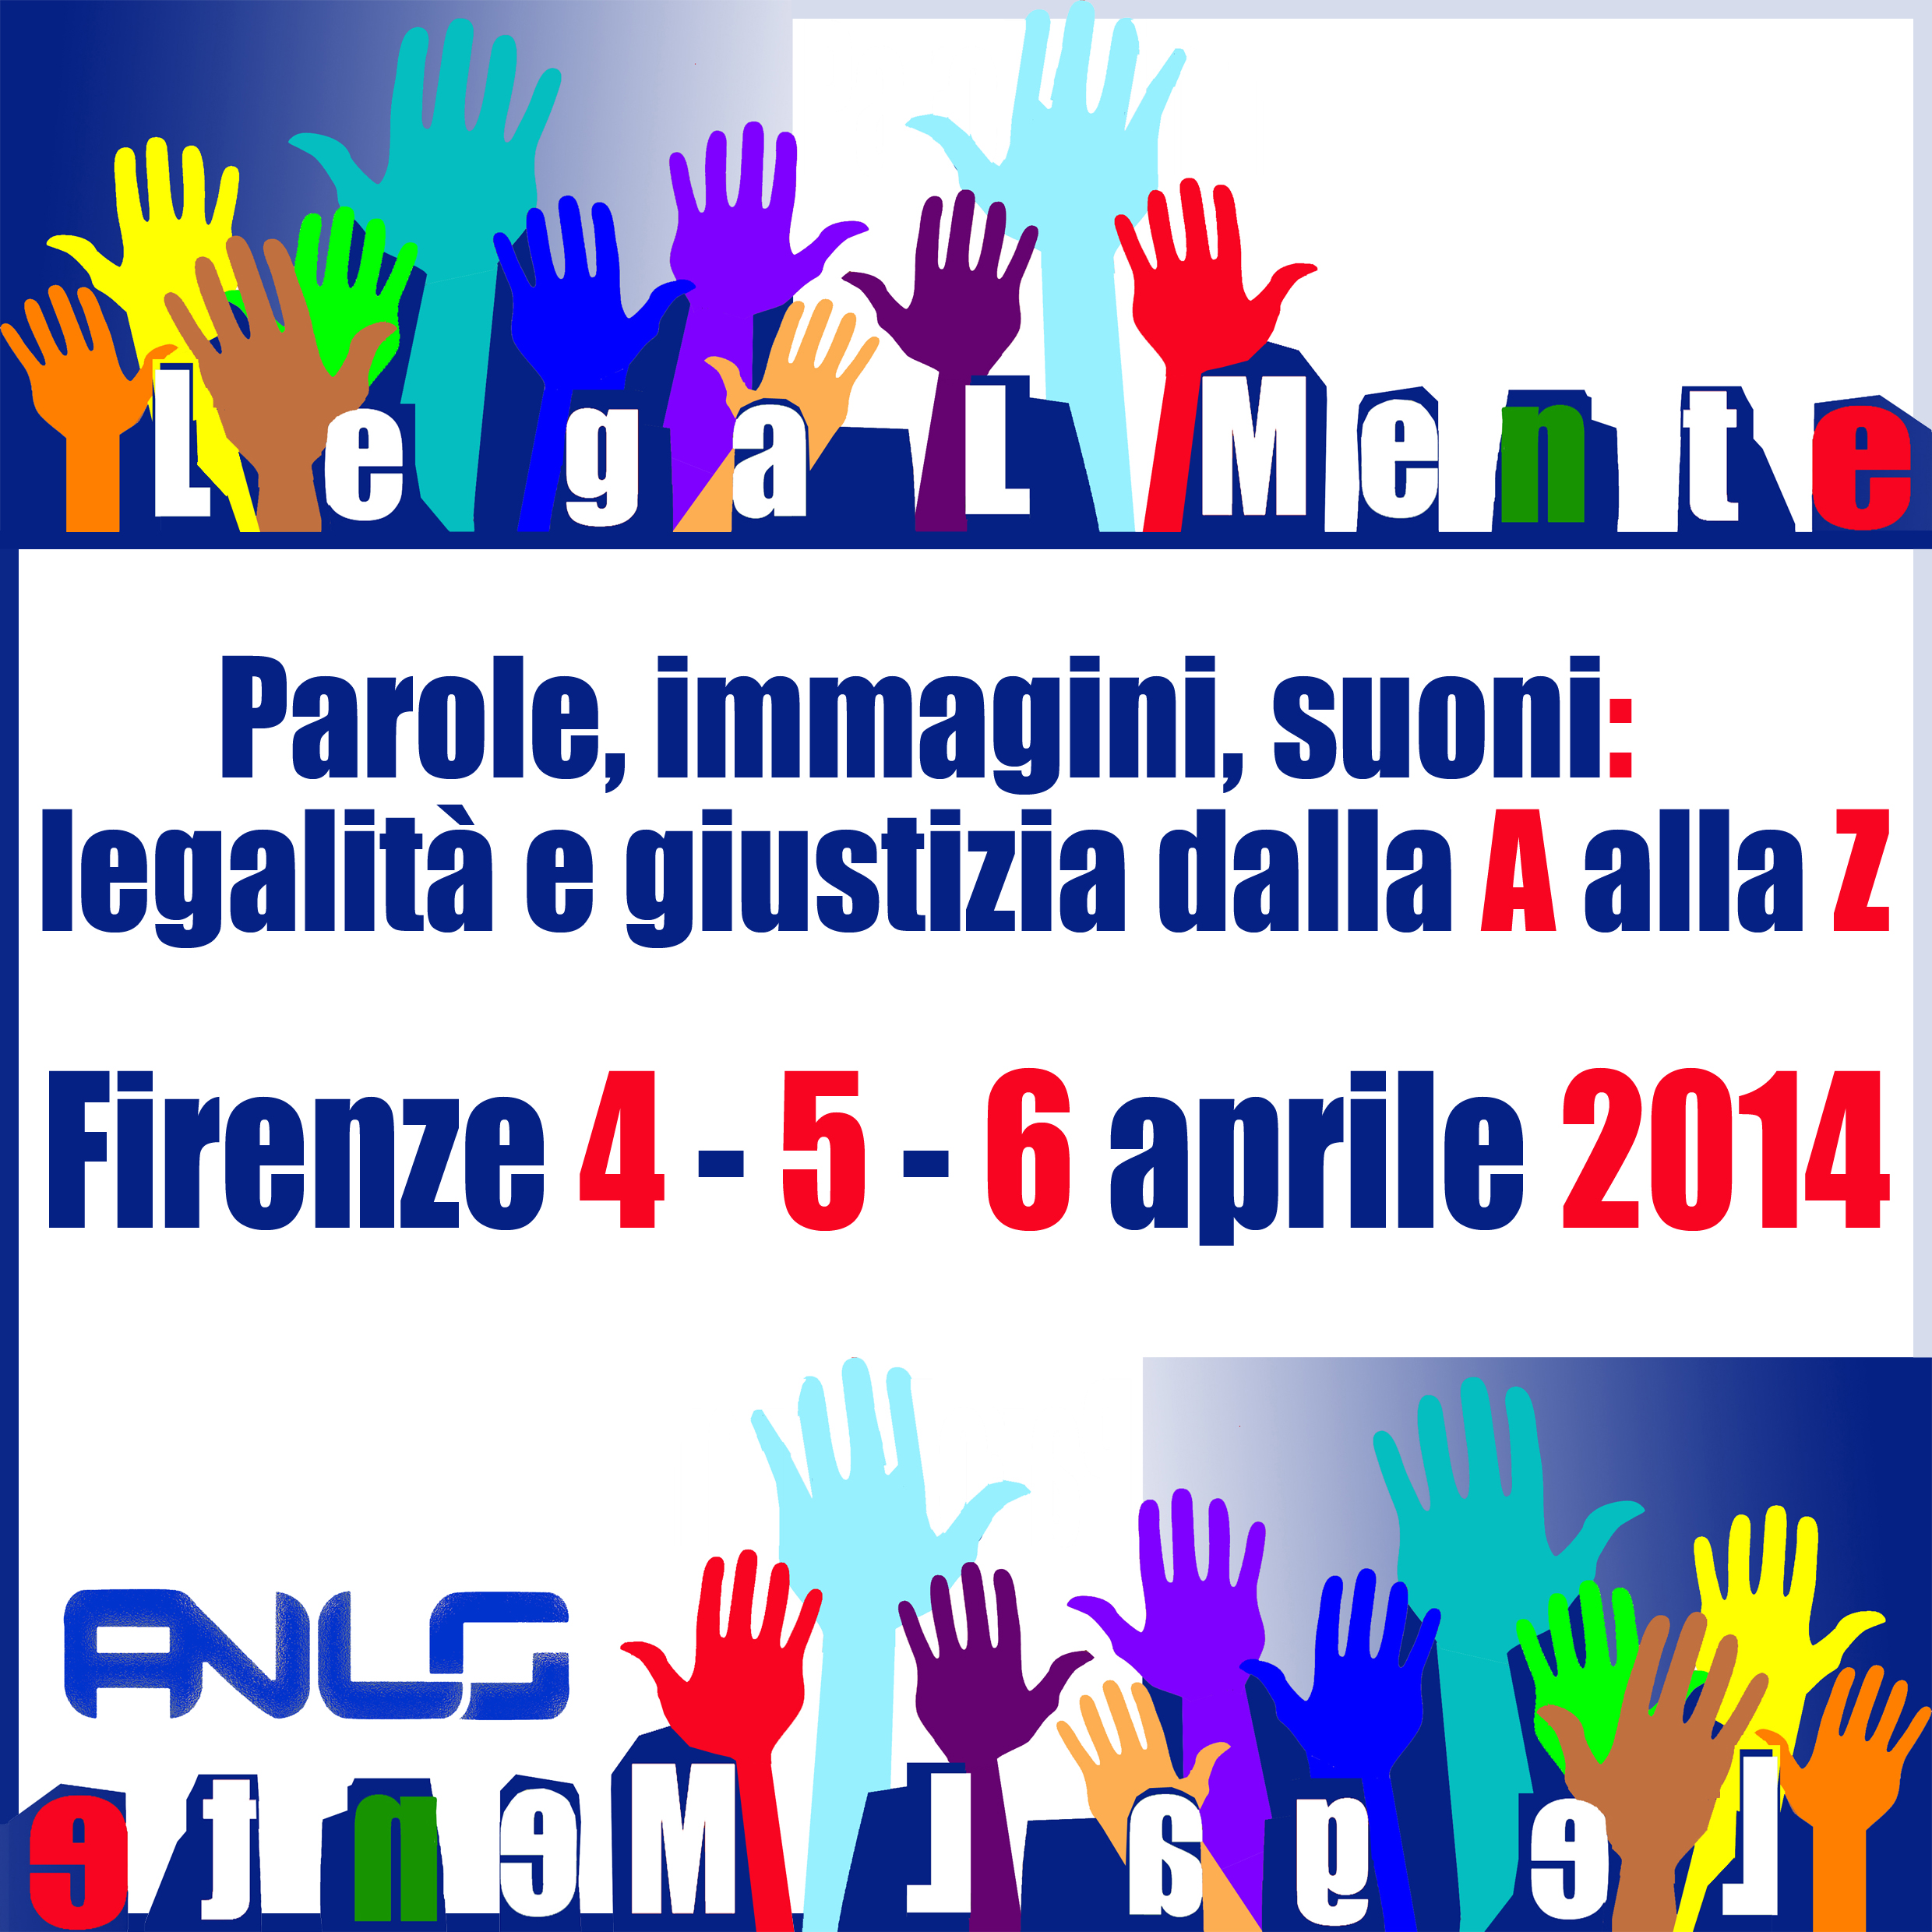 Parole, immagini, suoni: legalità e giustizia dalla A alla Z. Firenze 4-5-6 aprile 2014